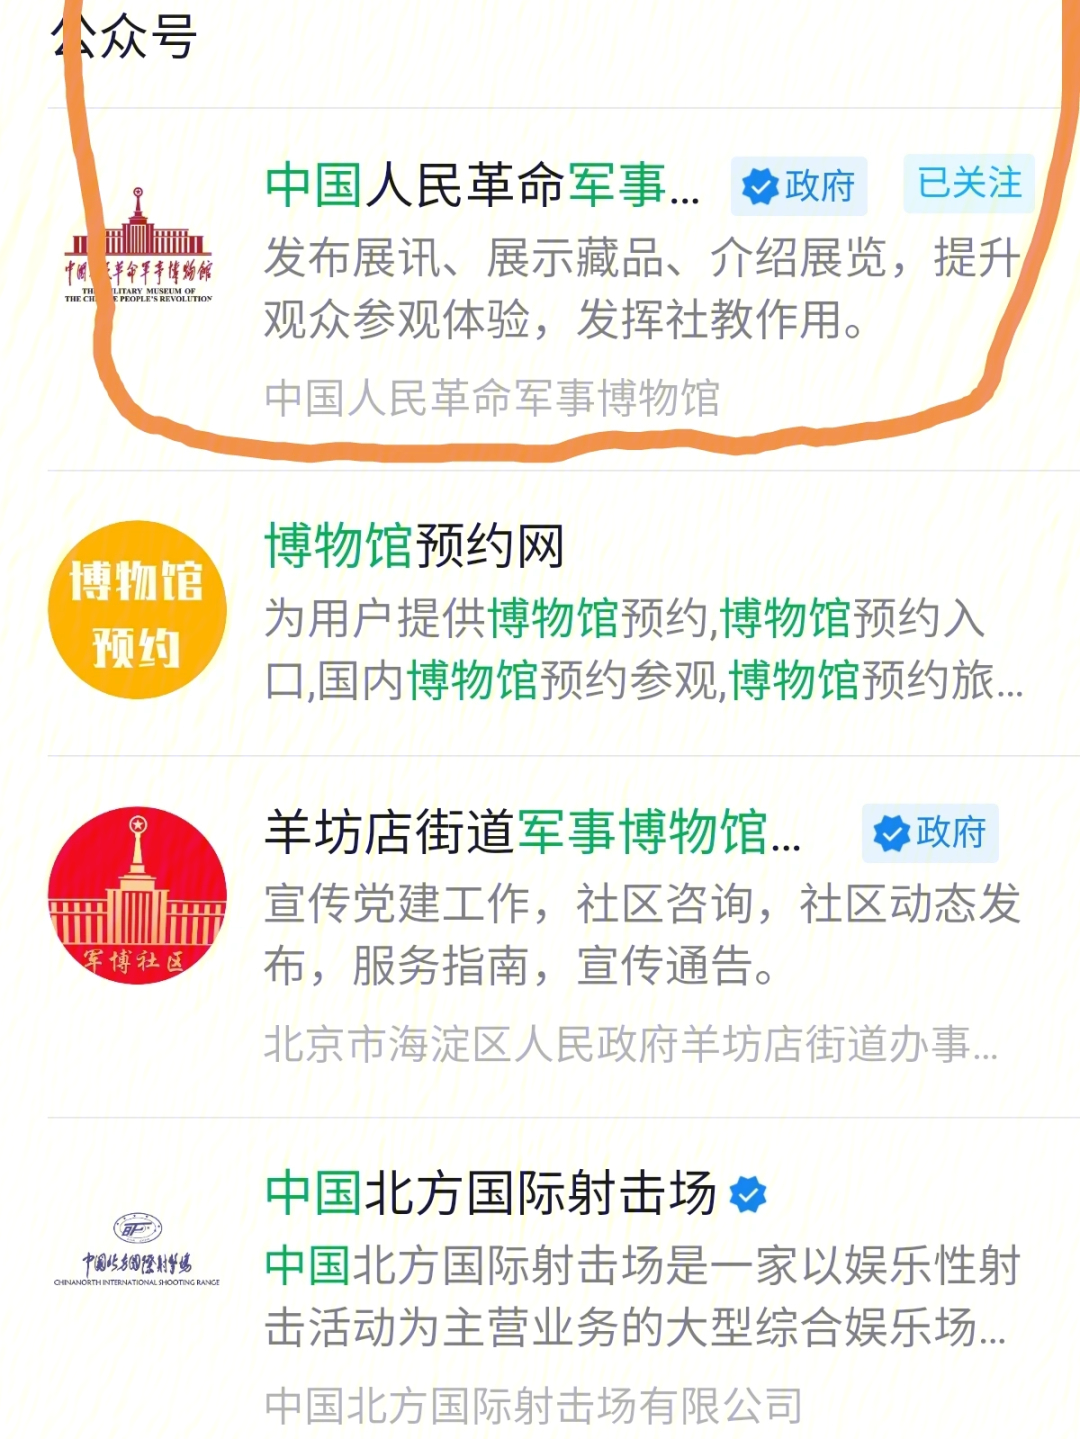 如果预约北京军事博物馆关注 中国人民革命军事博物馆 公众号选择门票